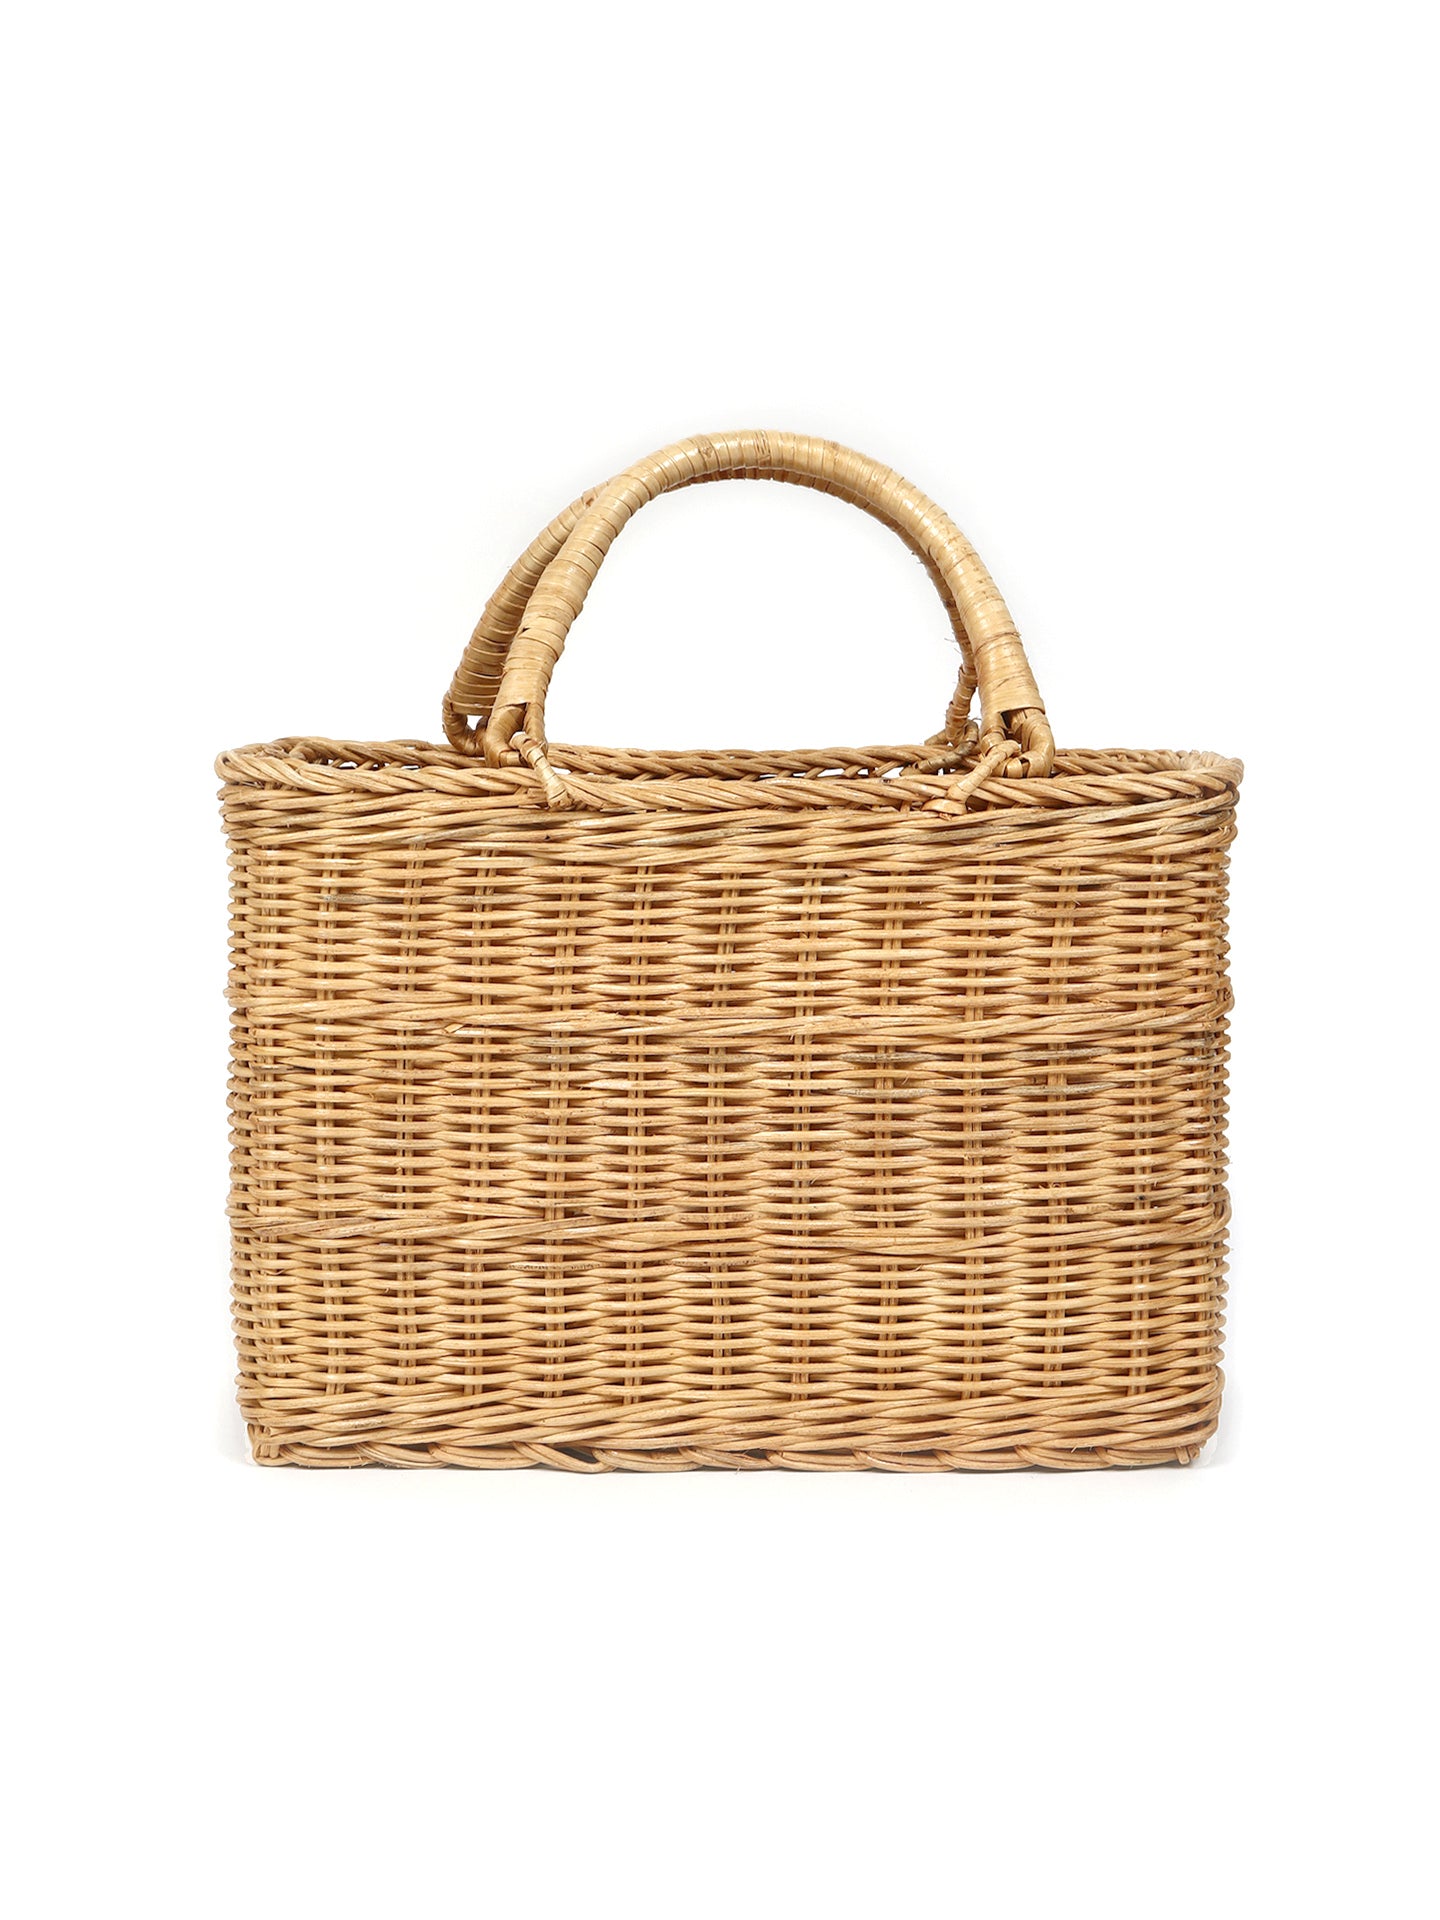 Cane Shopping Basket |